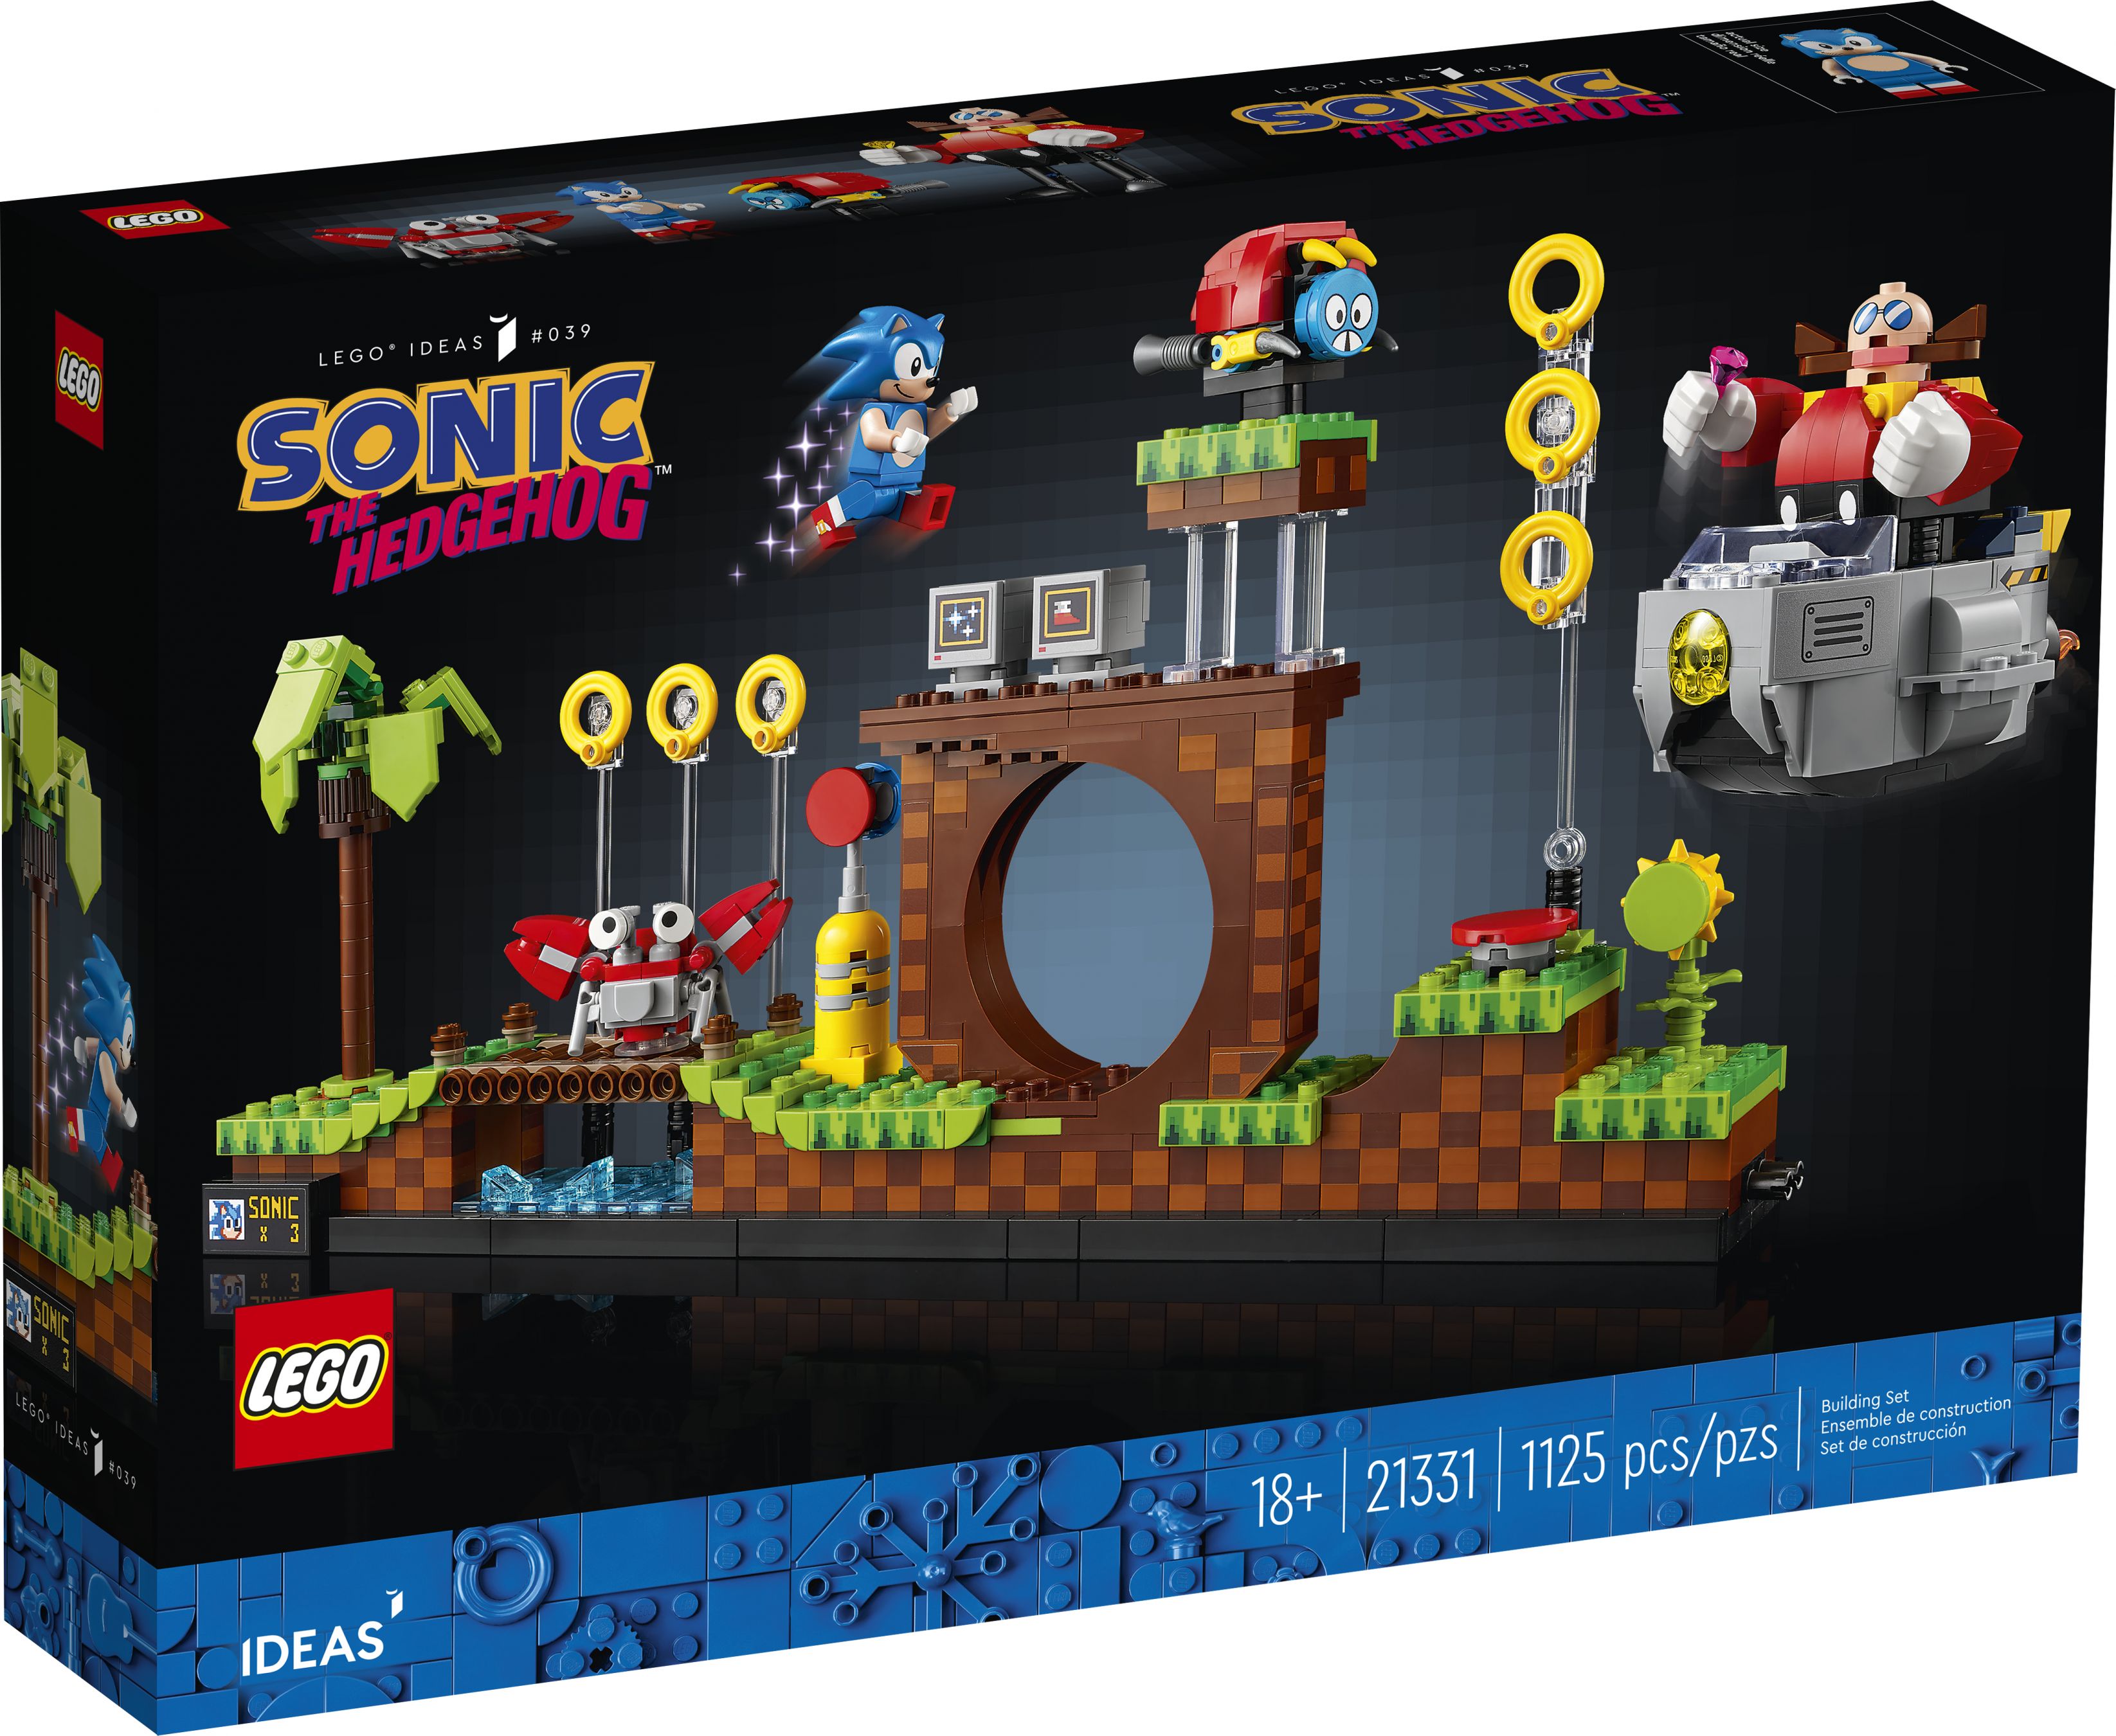 LEGO Ideas 21331 Sonic the Hedgehog™ – Green Hill Zone LEGO_21331_Box1_v39.jpg